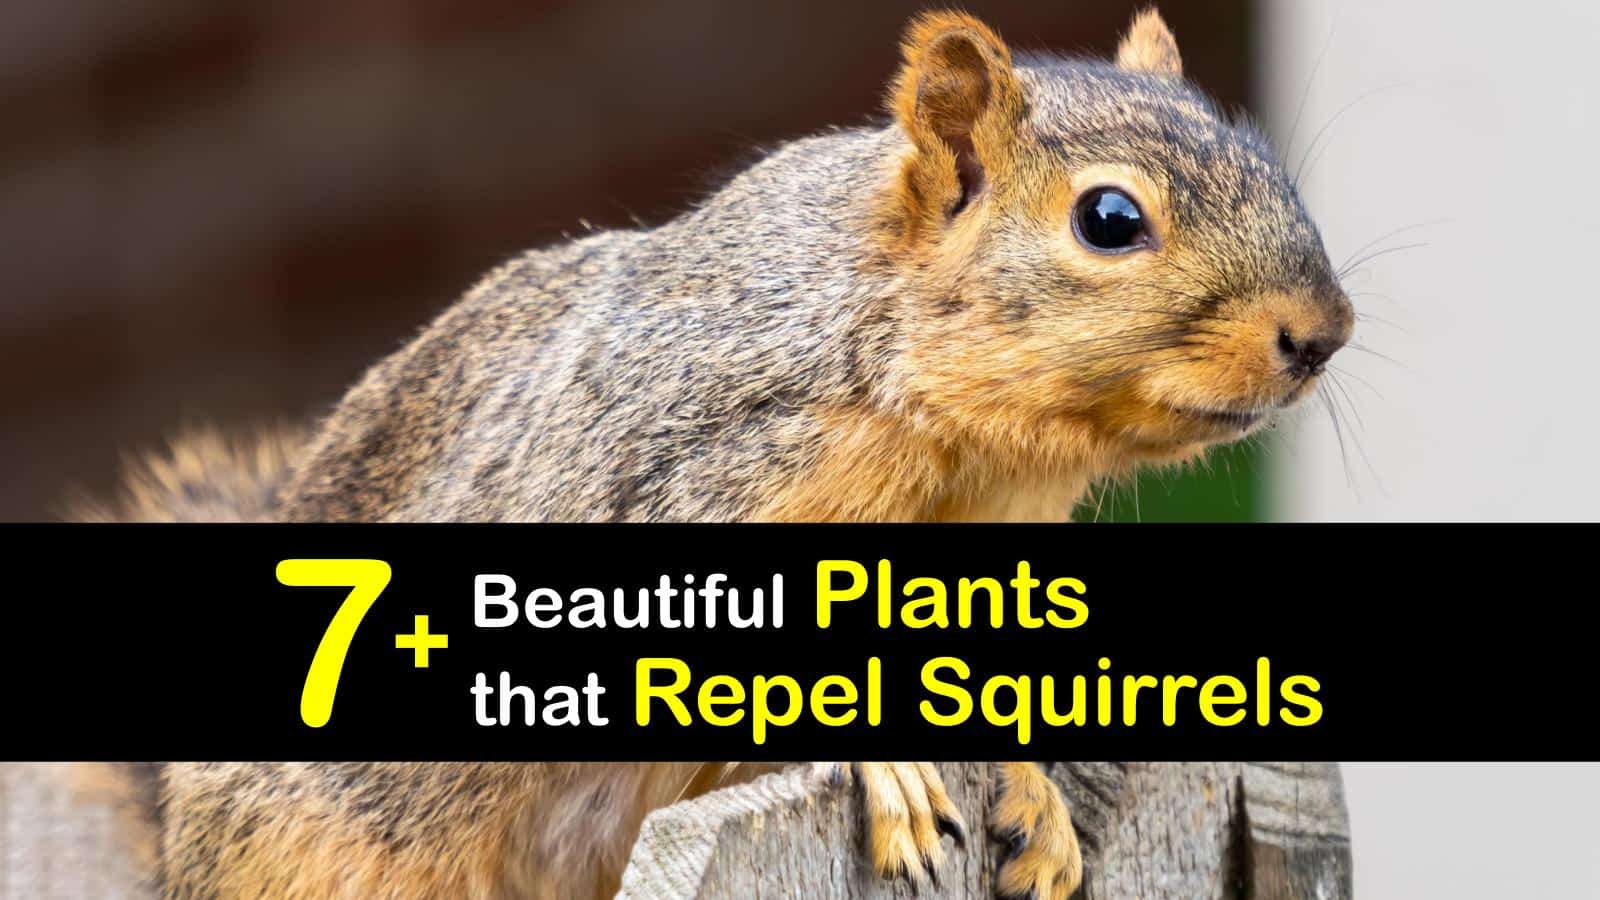 Plants That Repel Squirrels T1 